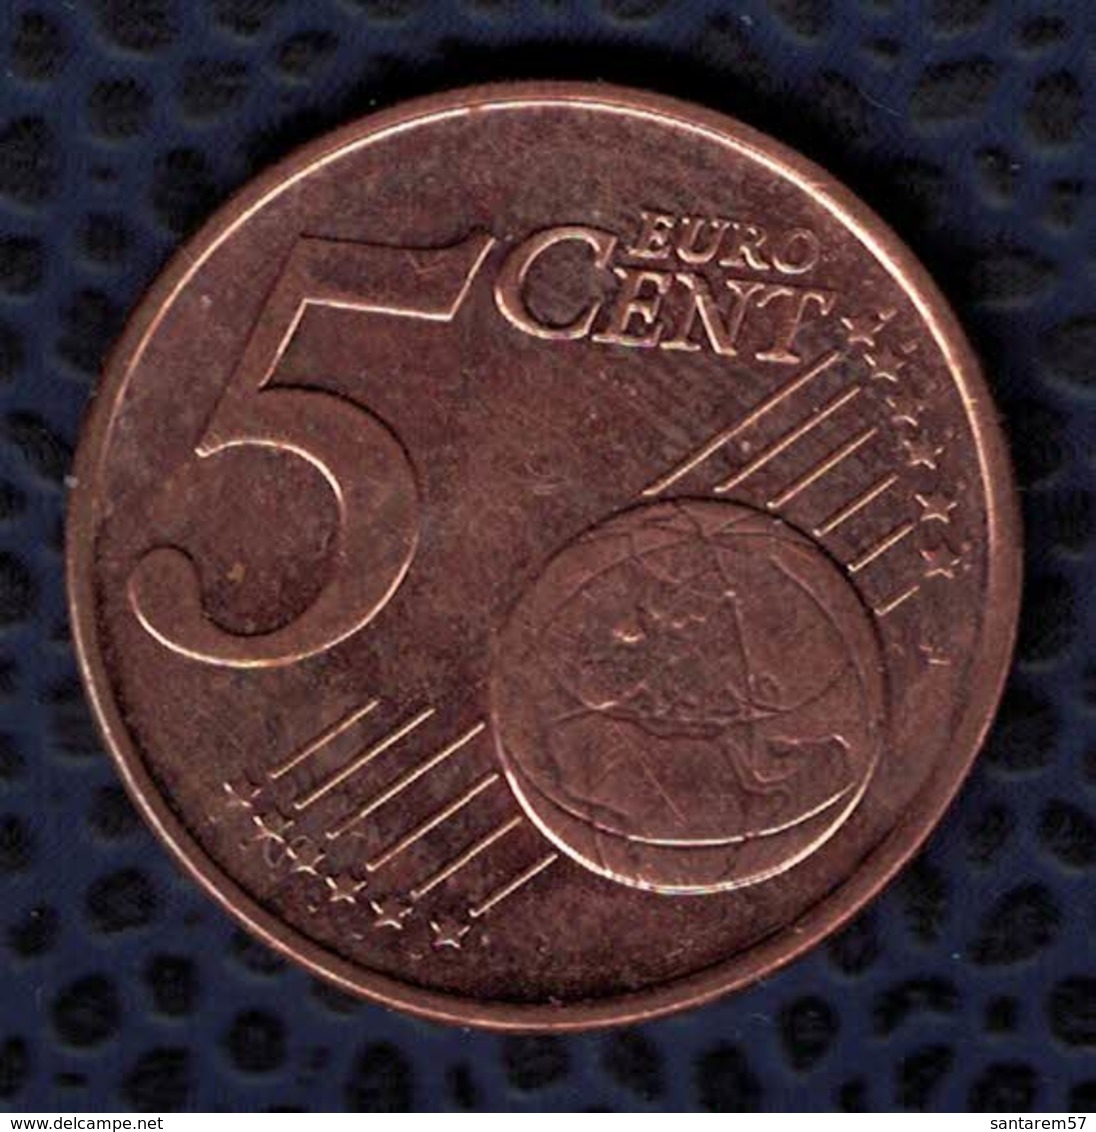 Grèce 2009 Pièce De Monnaie Coin 5 Euro Cent Bateau Globe étoiles - Griechenland